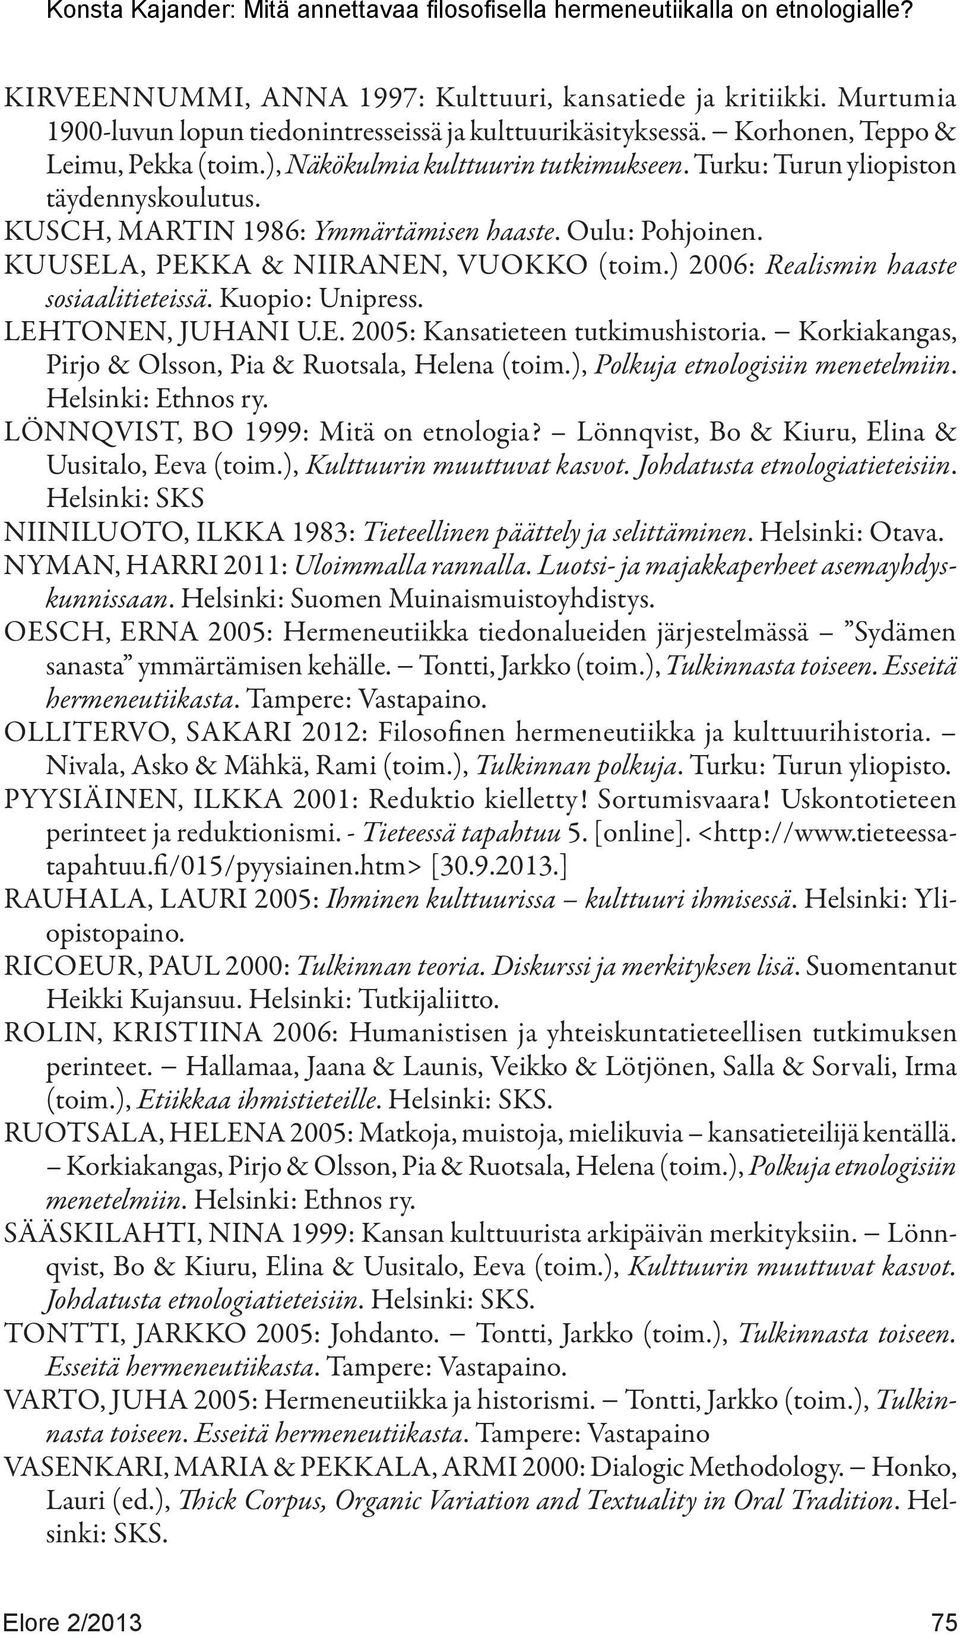 ) 2006: Realismin haaste sosiaalitieteissä. Kuopio: Unipress. LEHTONEN, JUHANI U.E. 2005: Kansatieteen tutkimushistoria. Korkiakangas, Pirjo & Olsson, Pia & Ruotsala, Helena (toim.